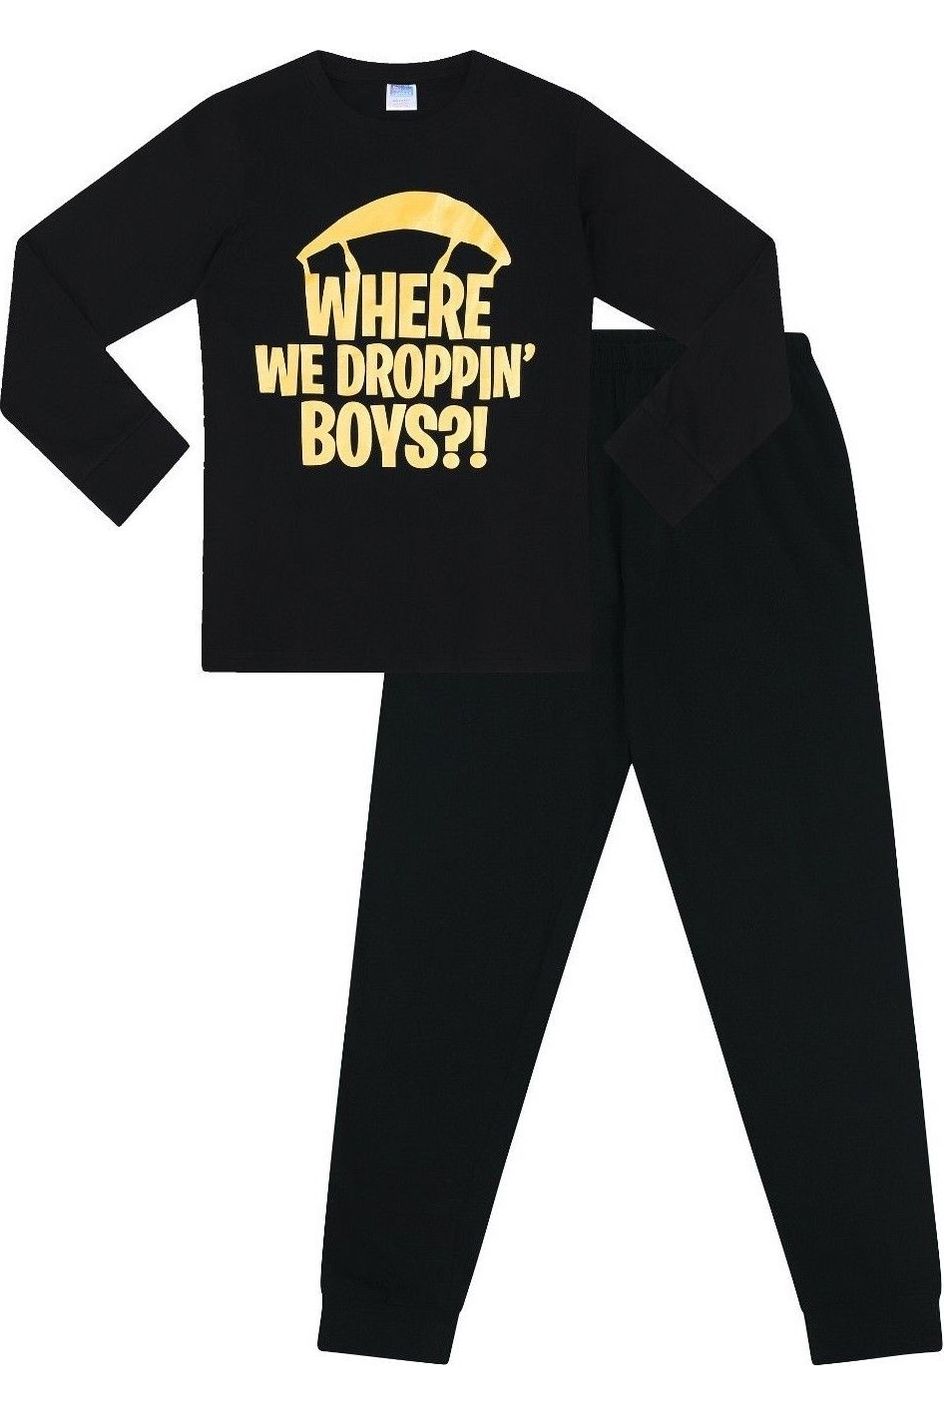 Boys Where We Droppin' Long Pyjamas - Pyjamas.com